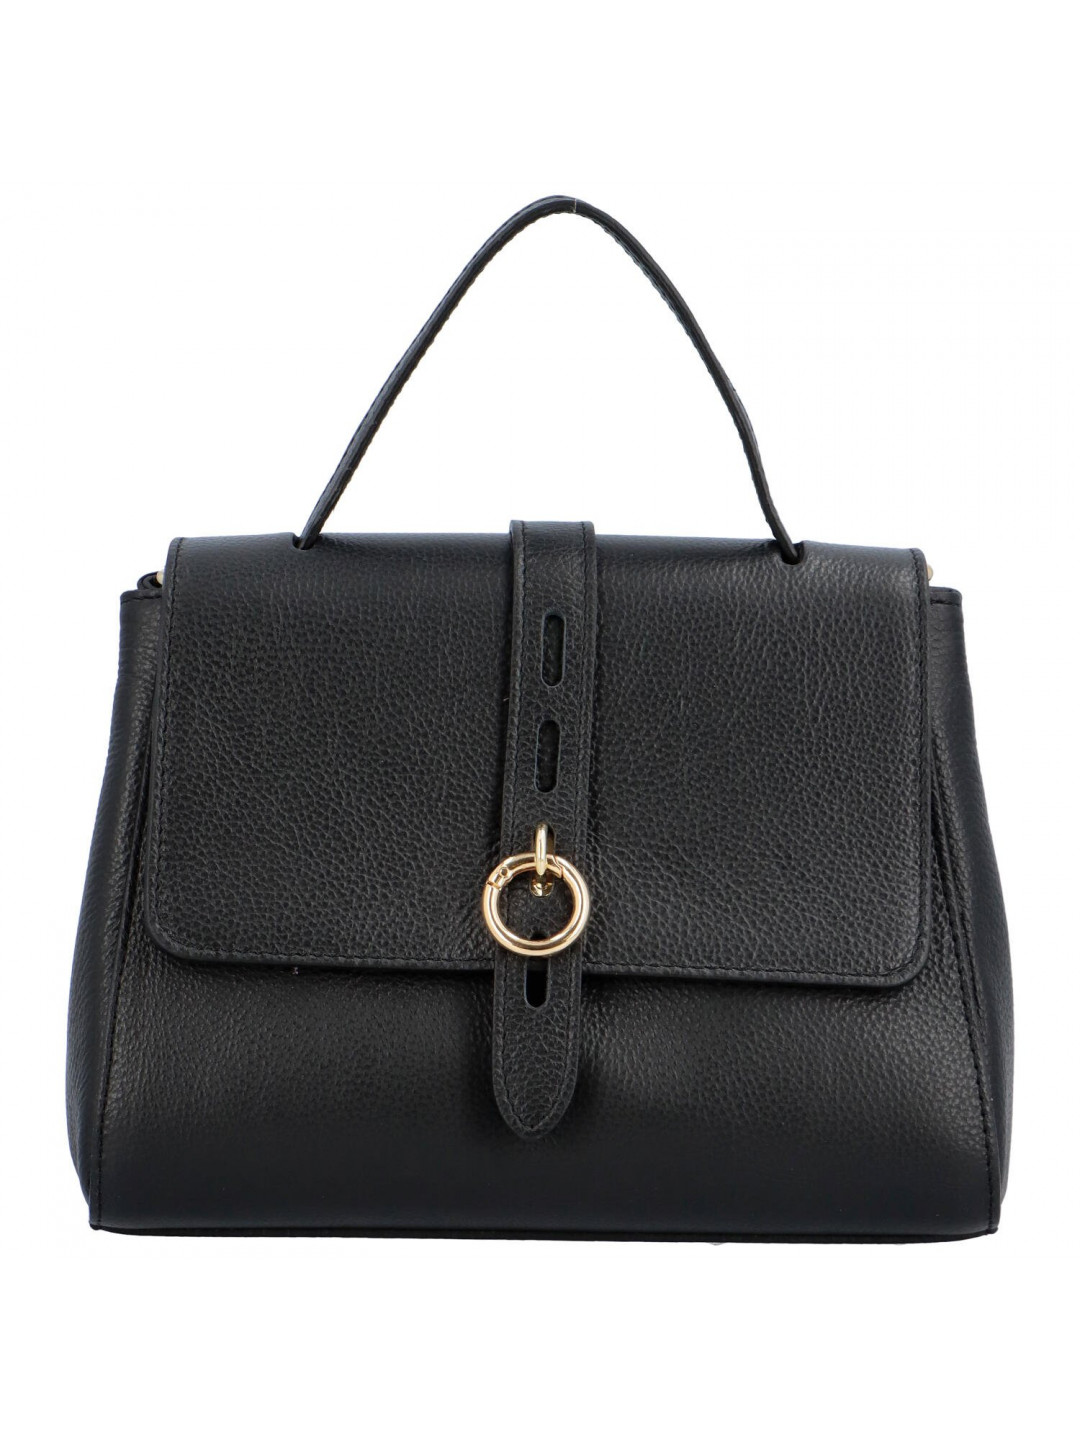 Luxusní dámská kožená kufříková kabelka do ruky Ella černá